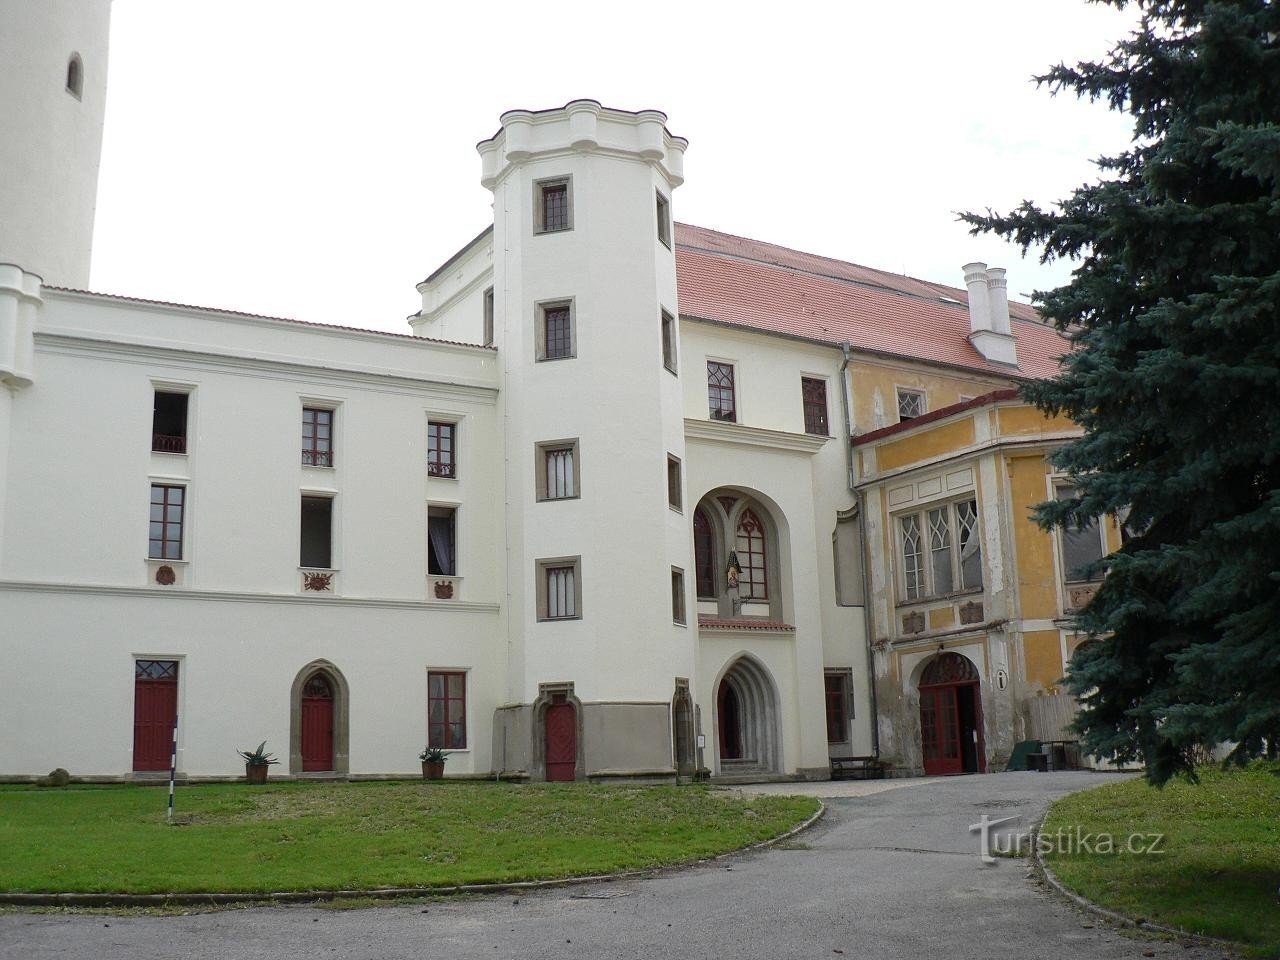 Κάστρο Bor, μέρος εισόδου